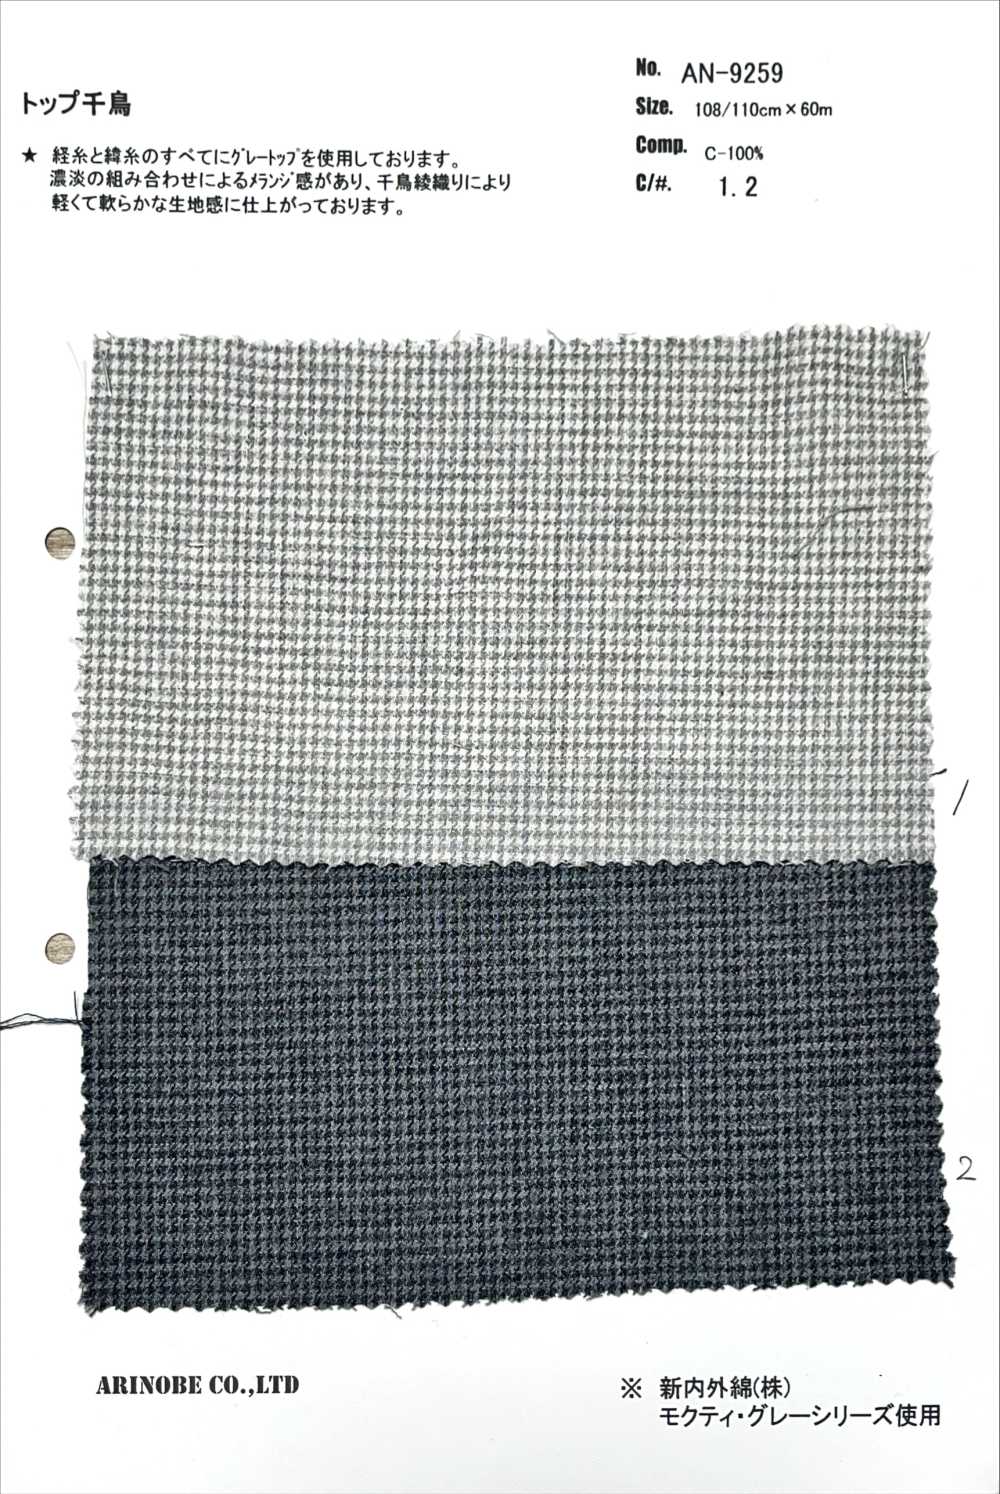 AN-9259 Pata De Gallo Superior[Fabrica Textil] ARINOBE CO., LTD.